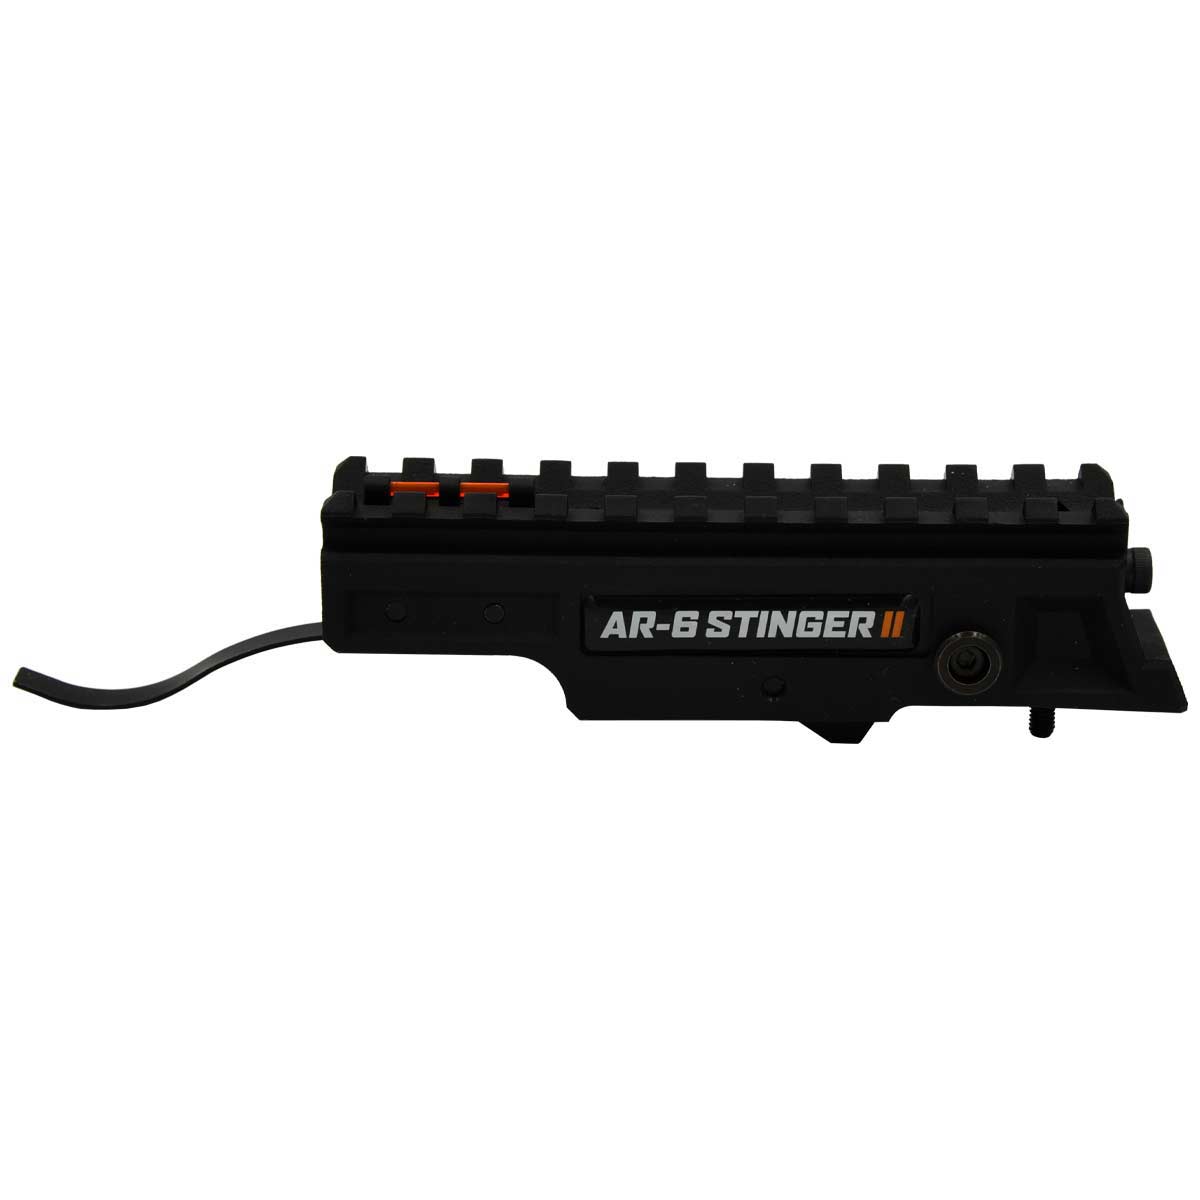 AR-6 Stinger II – Einzelschusssystem